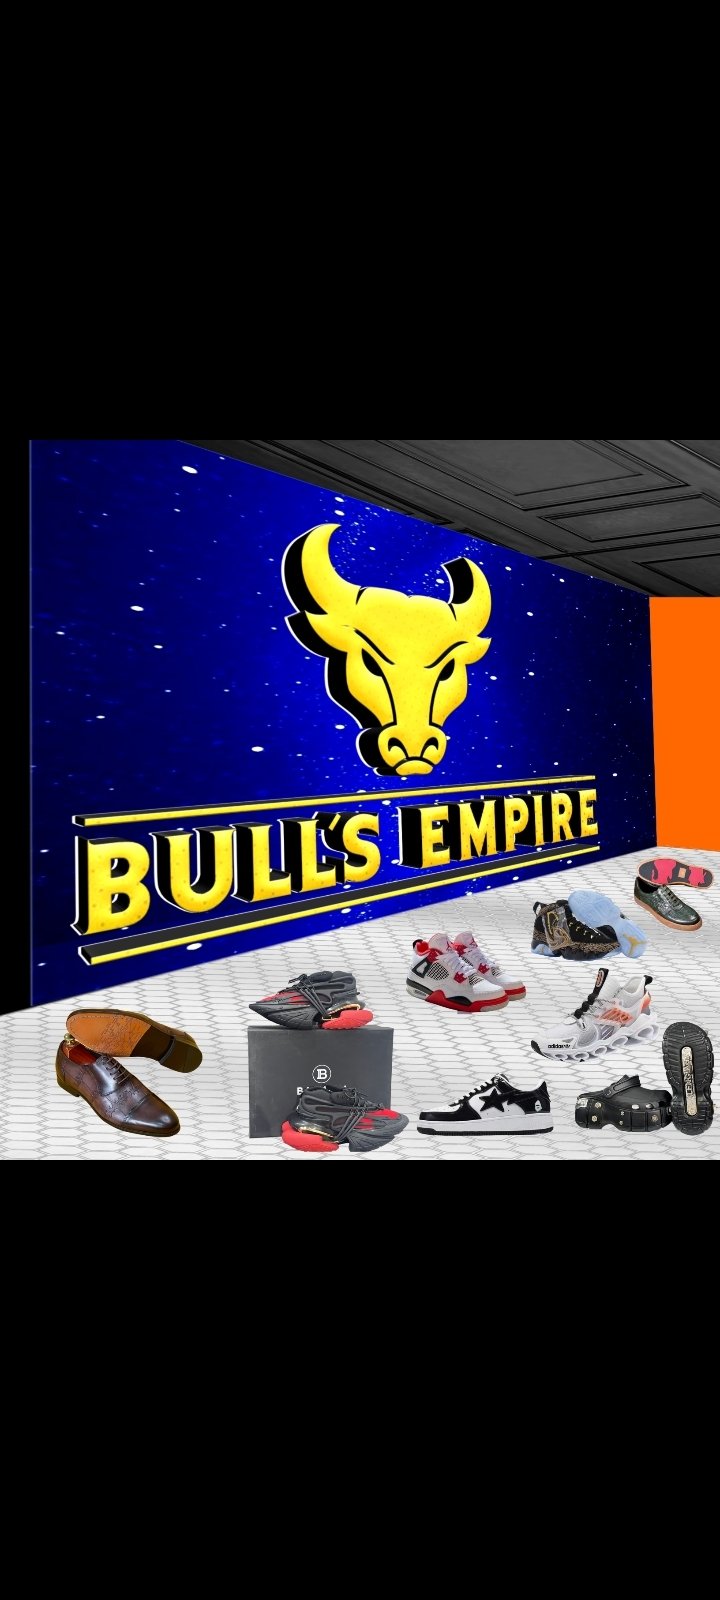 Bulls Empire